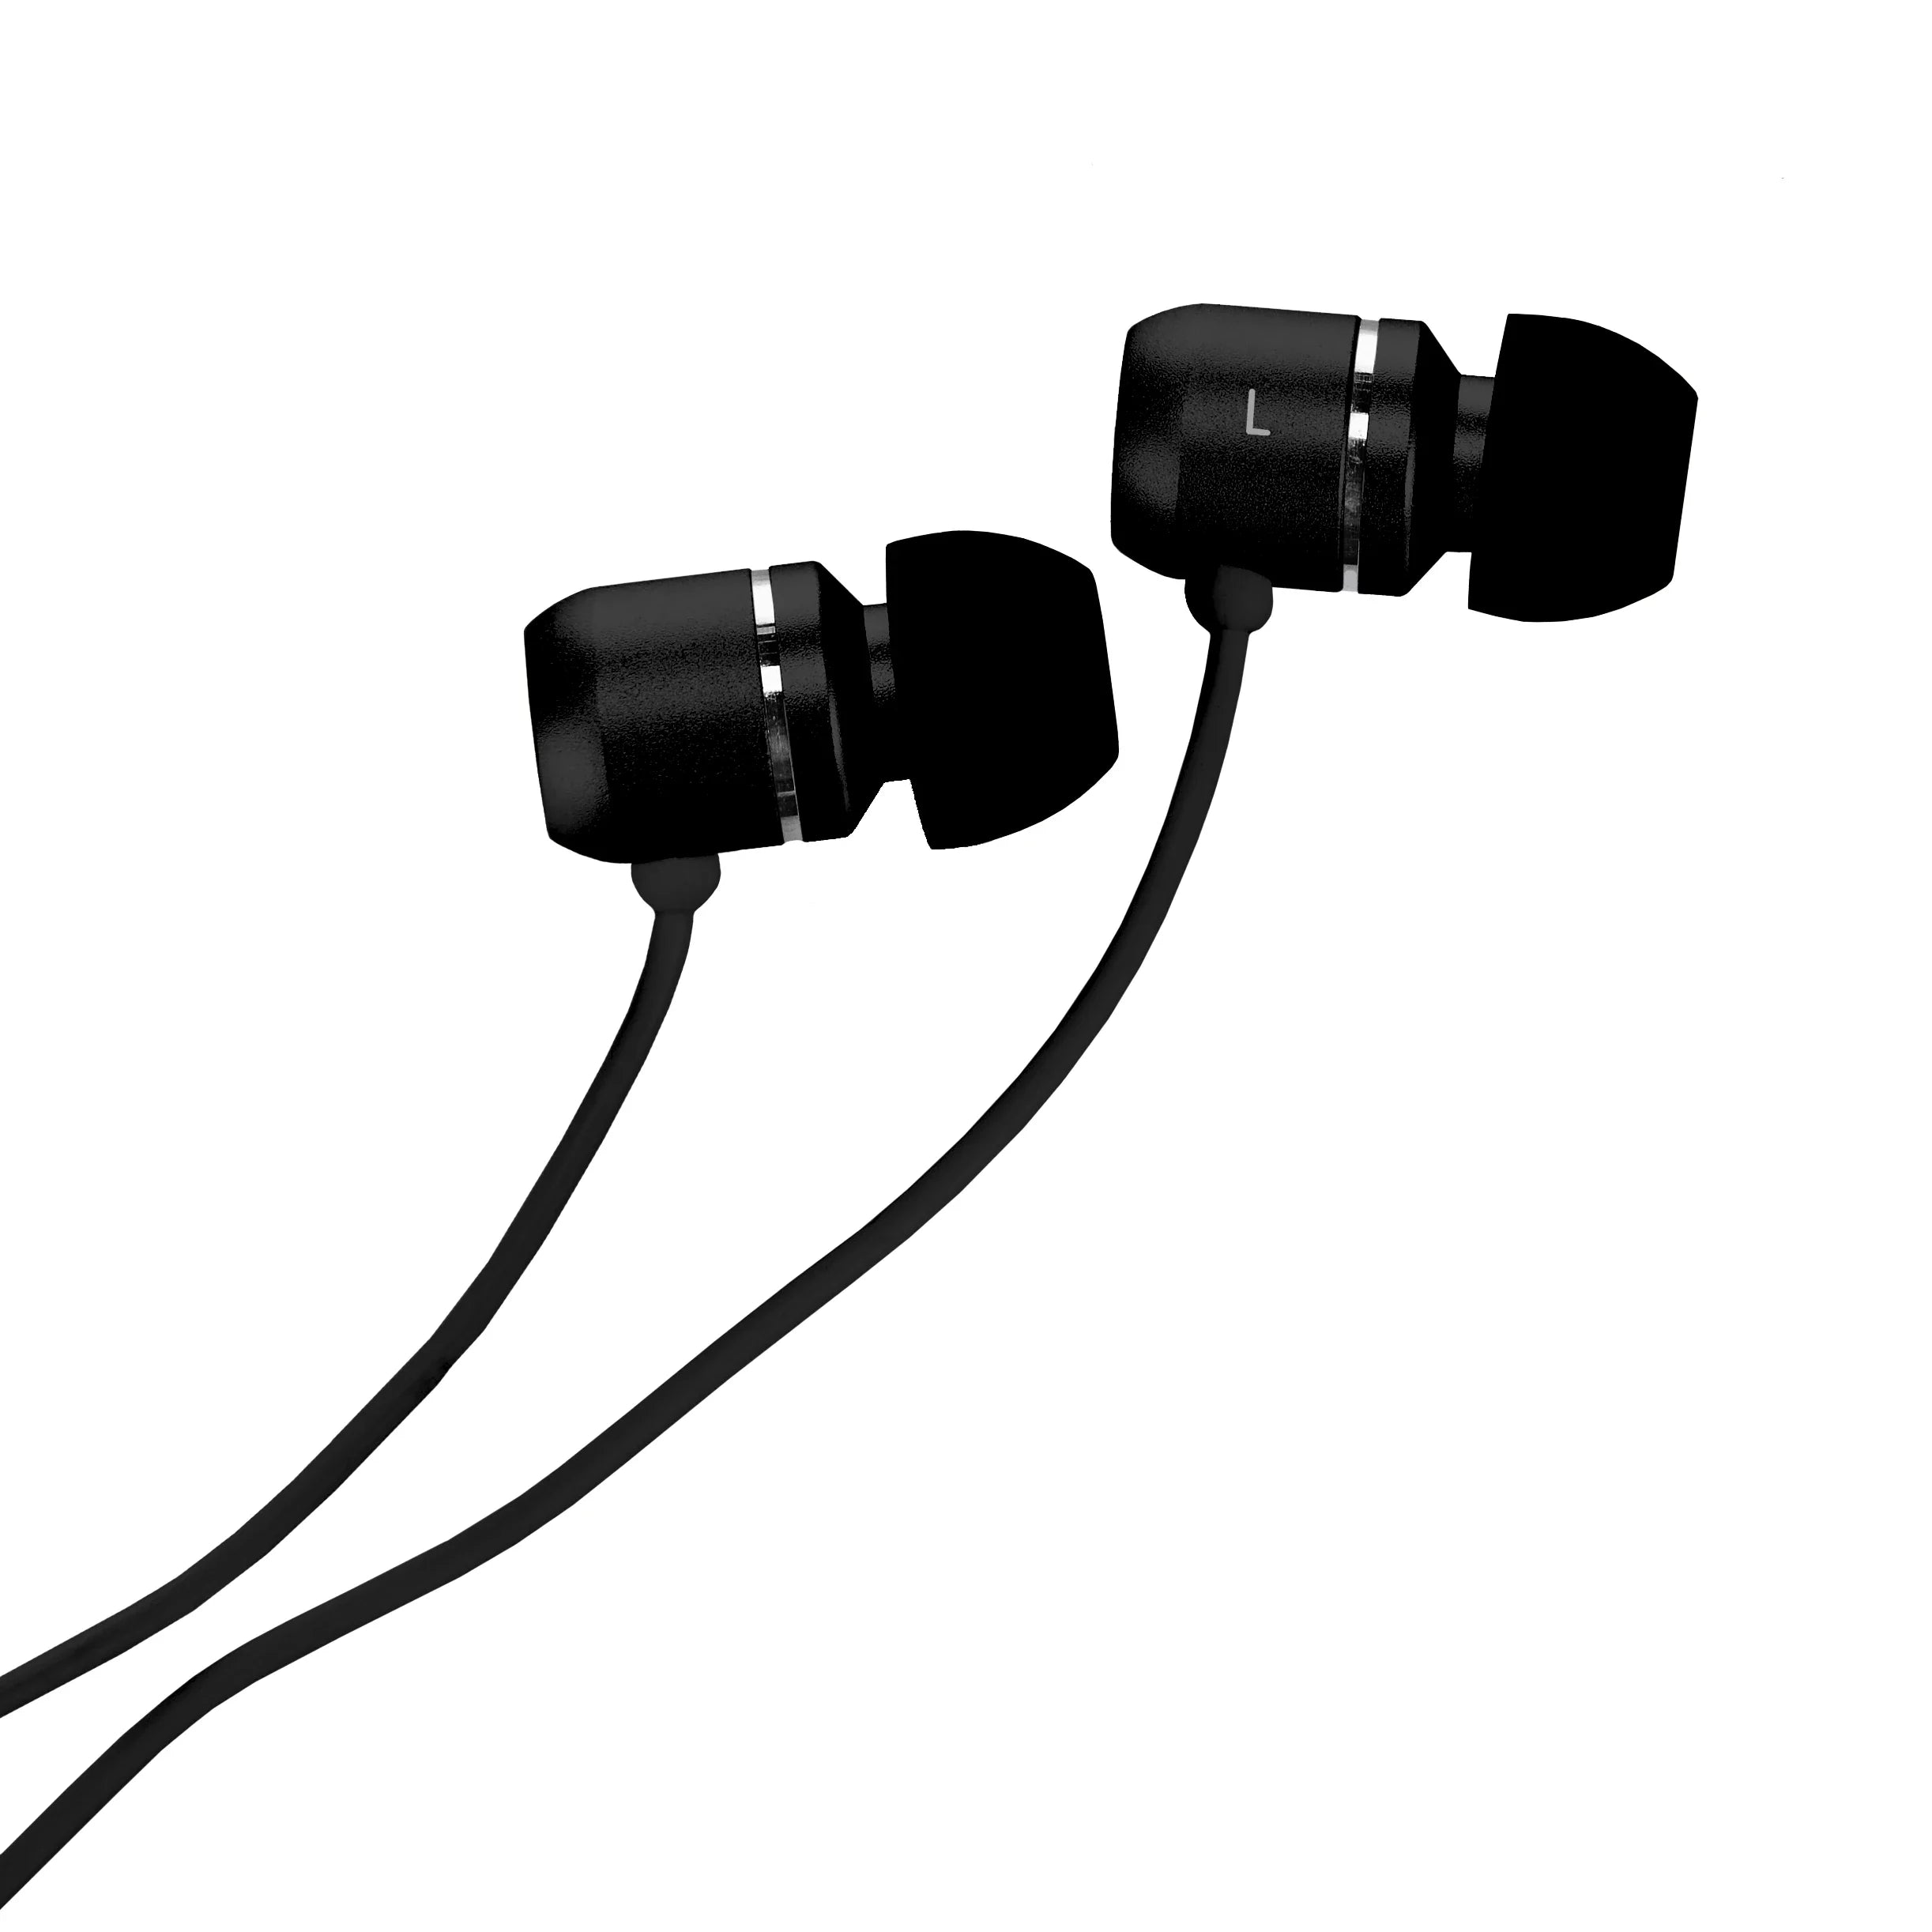 Design Go travel accessories Mobile Control headphones - black